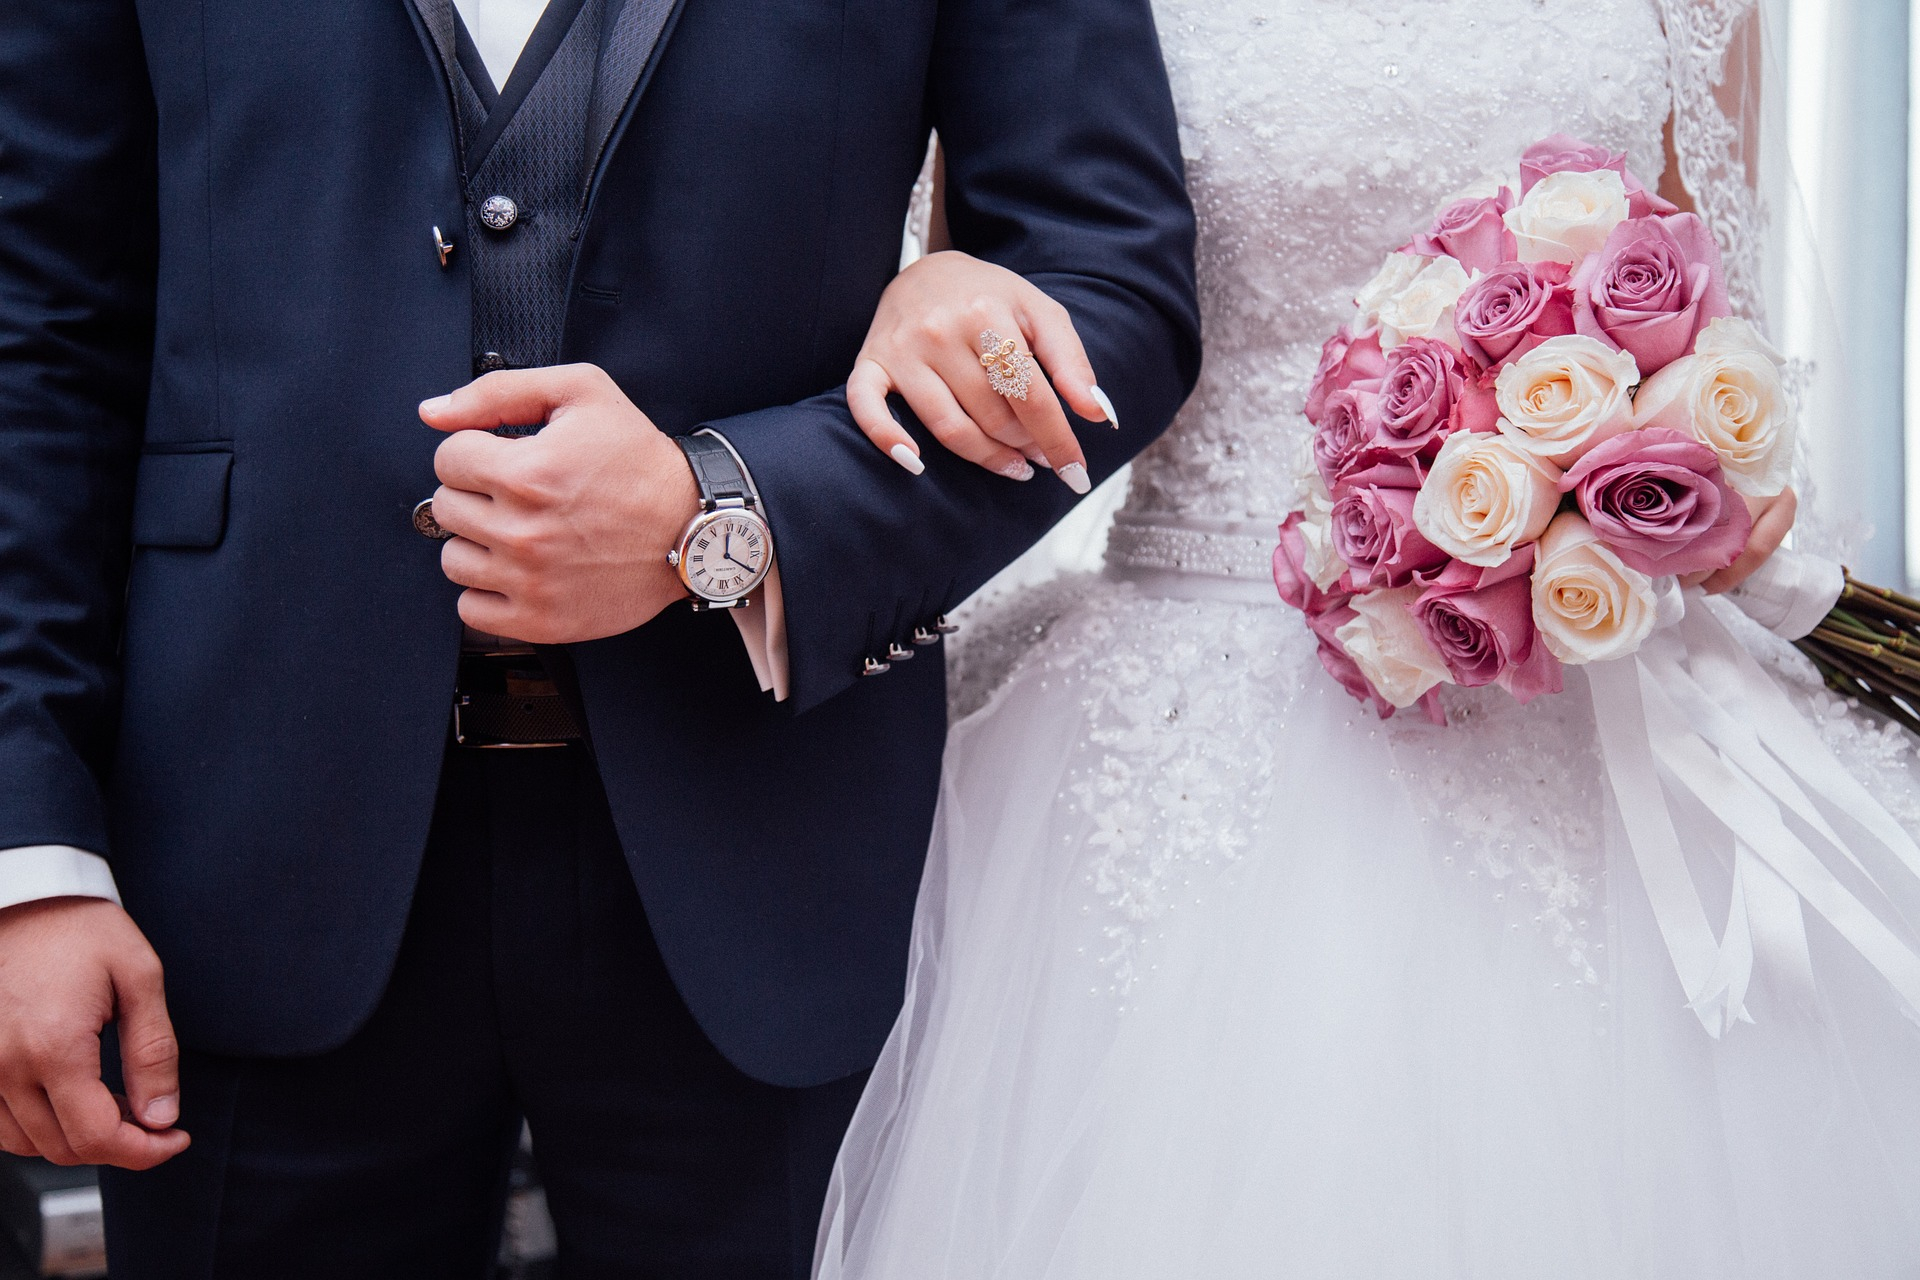 Названы самые красивые даты для свадьбы в 2019 году